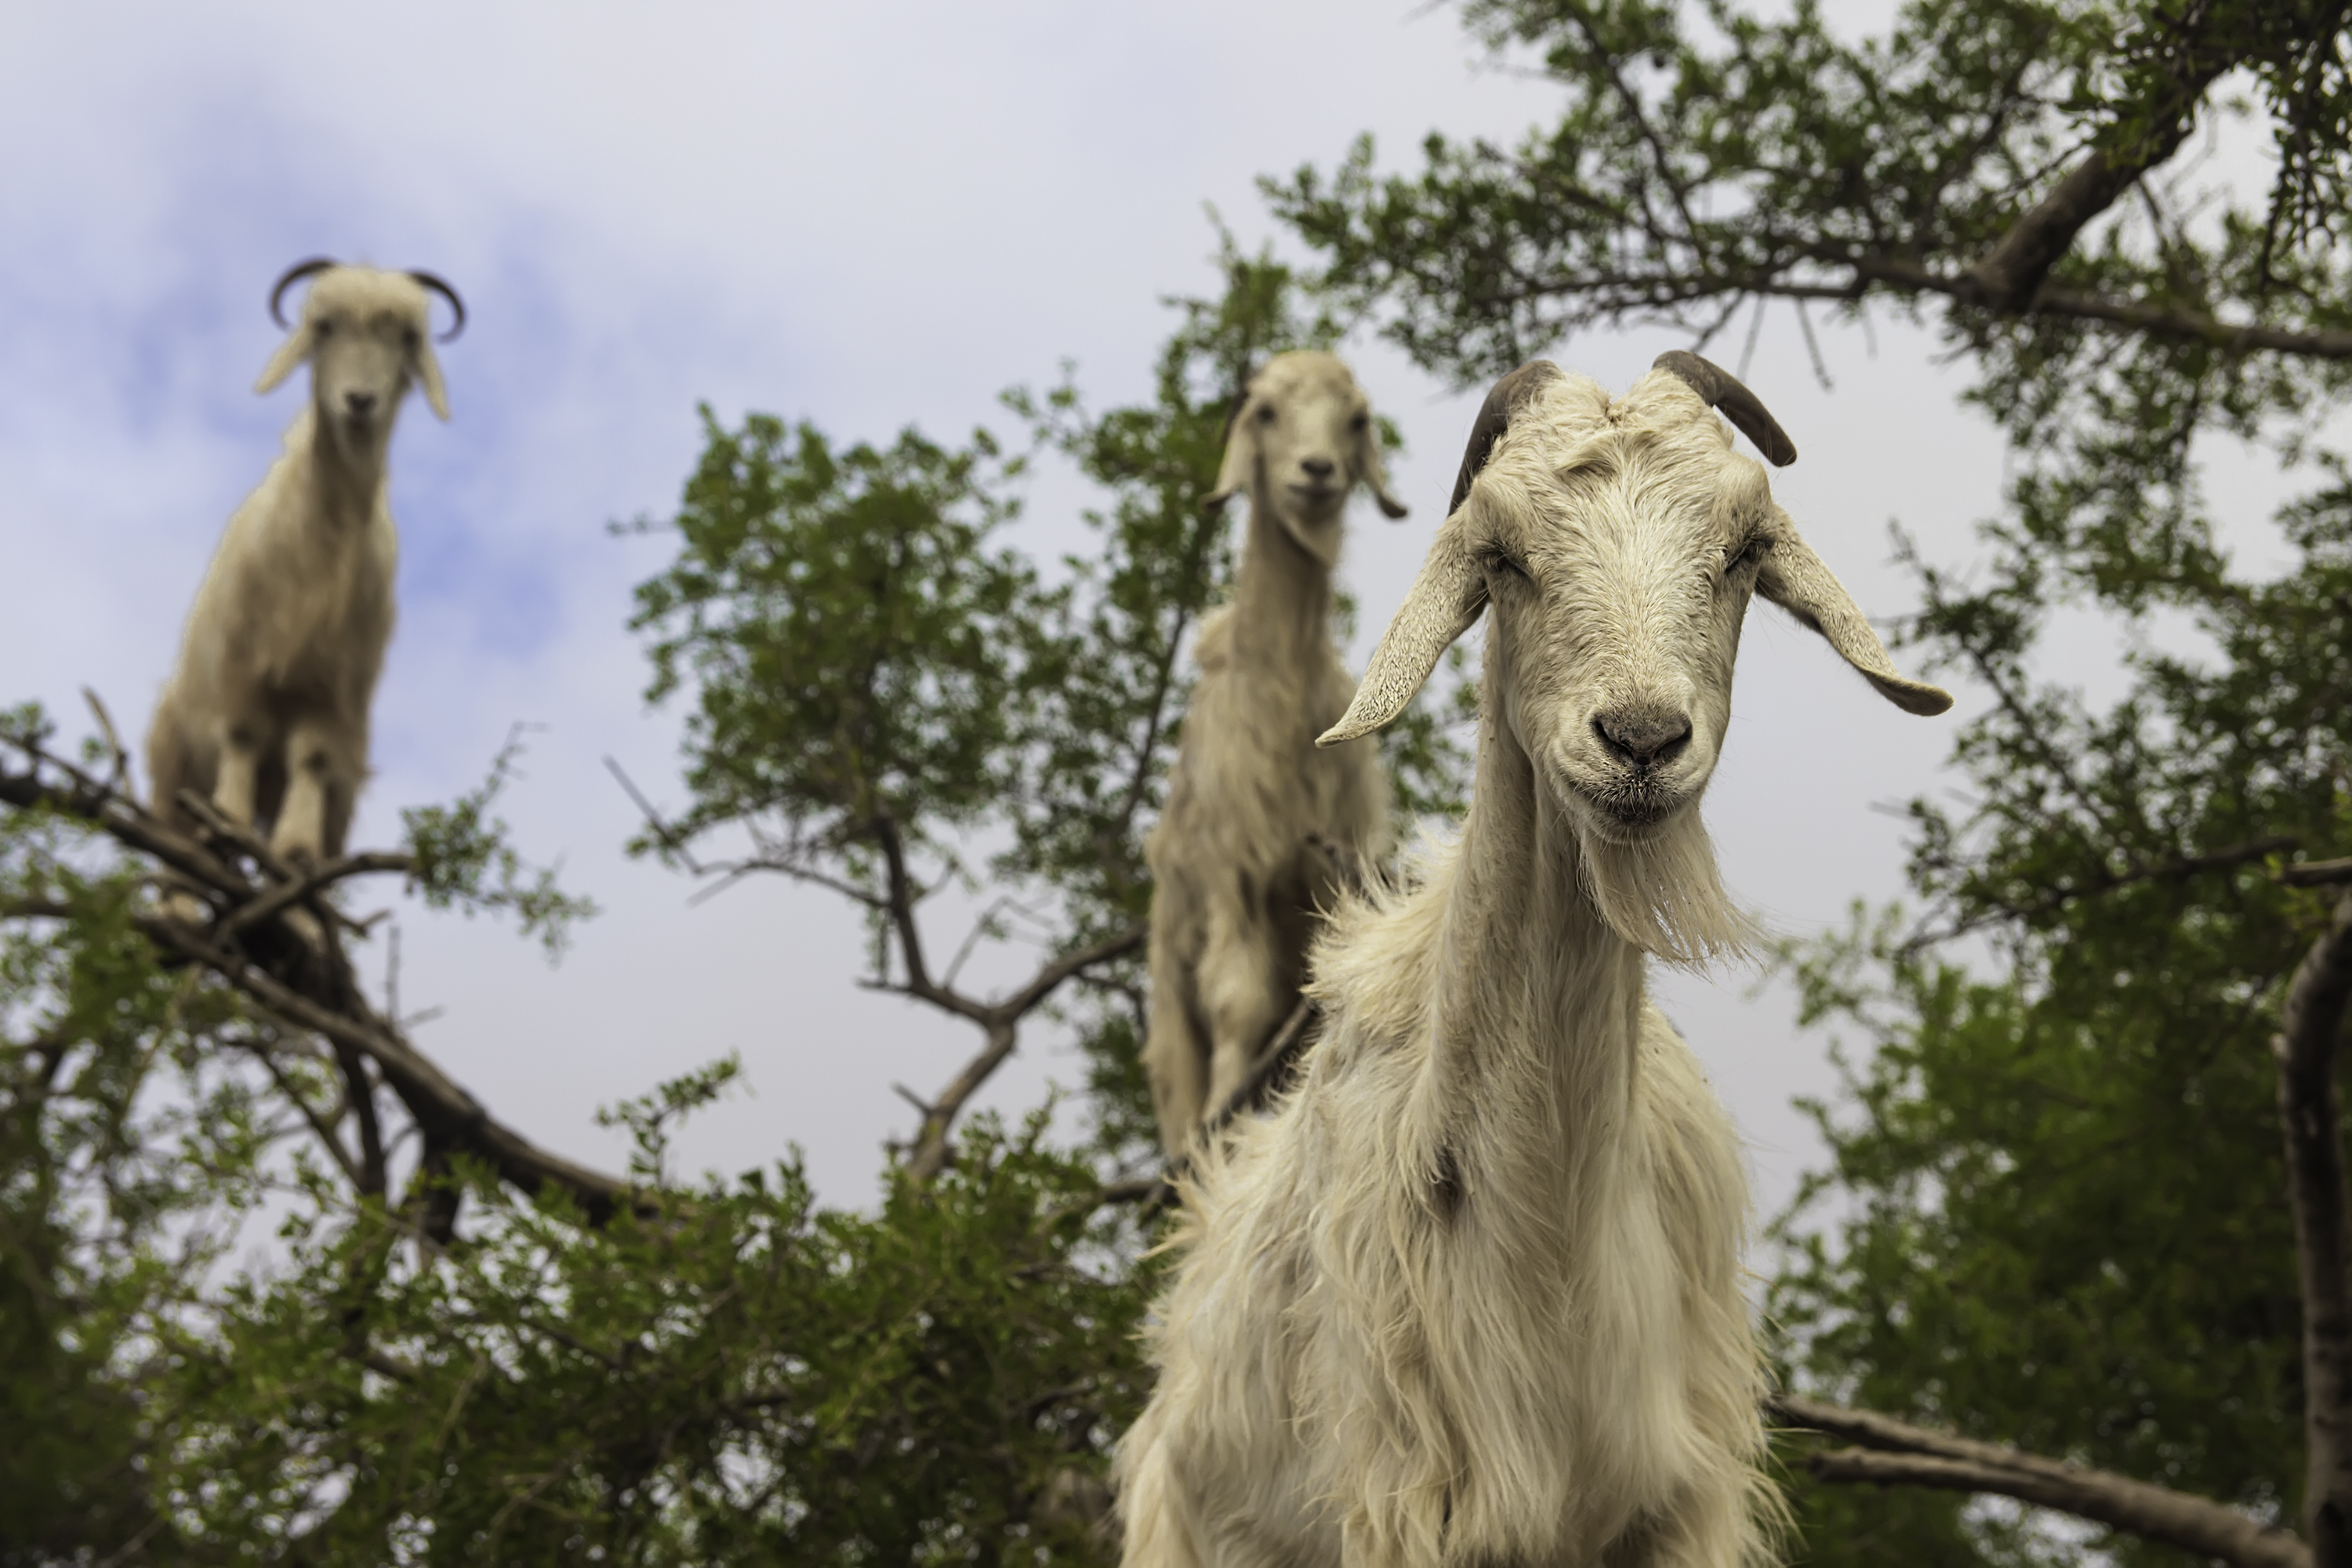 La increíble historia de las cabras que recortan árboles en Marruecos - 75